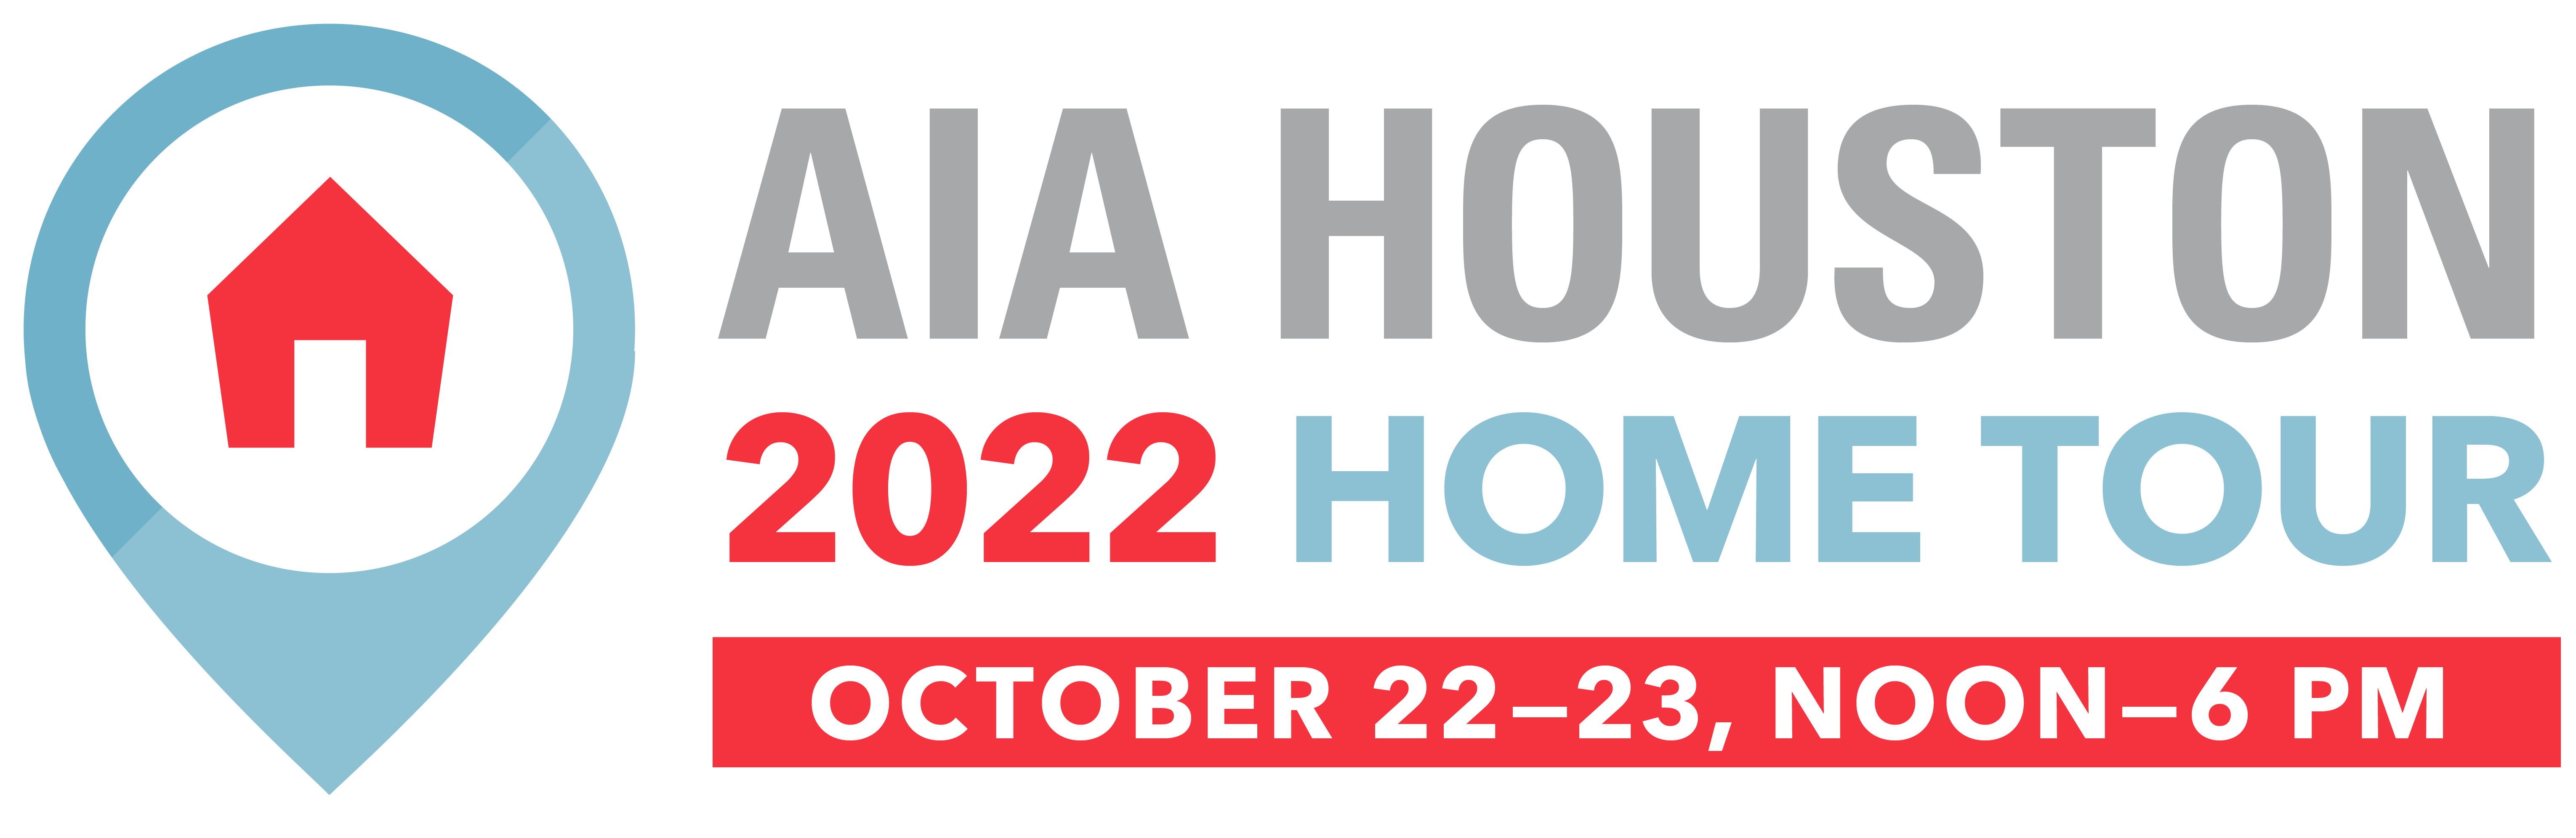 2022 AIA Houston Home Tour - OCT 23, AIA Houston